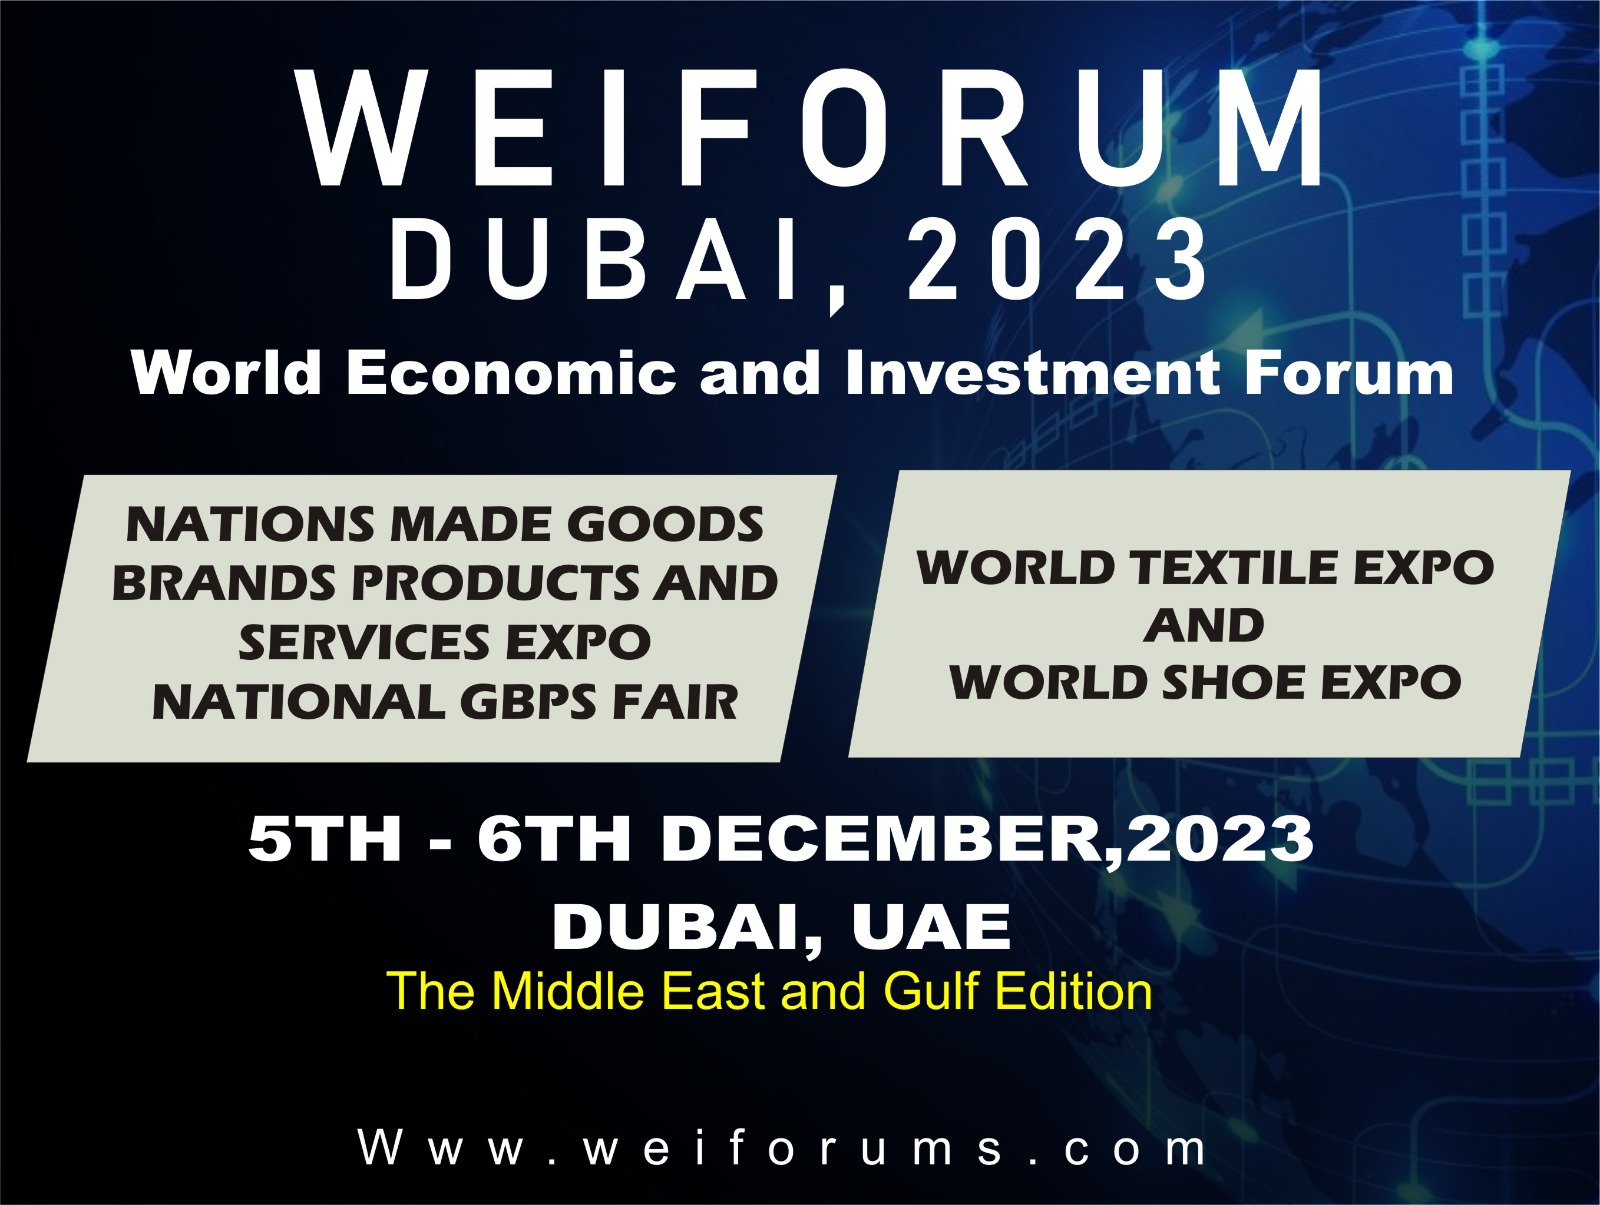 World Economic and Investment Forum (WEIFORUM), Dubai, UAE, Garhoud, Dubai, United Arab Emirates